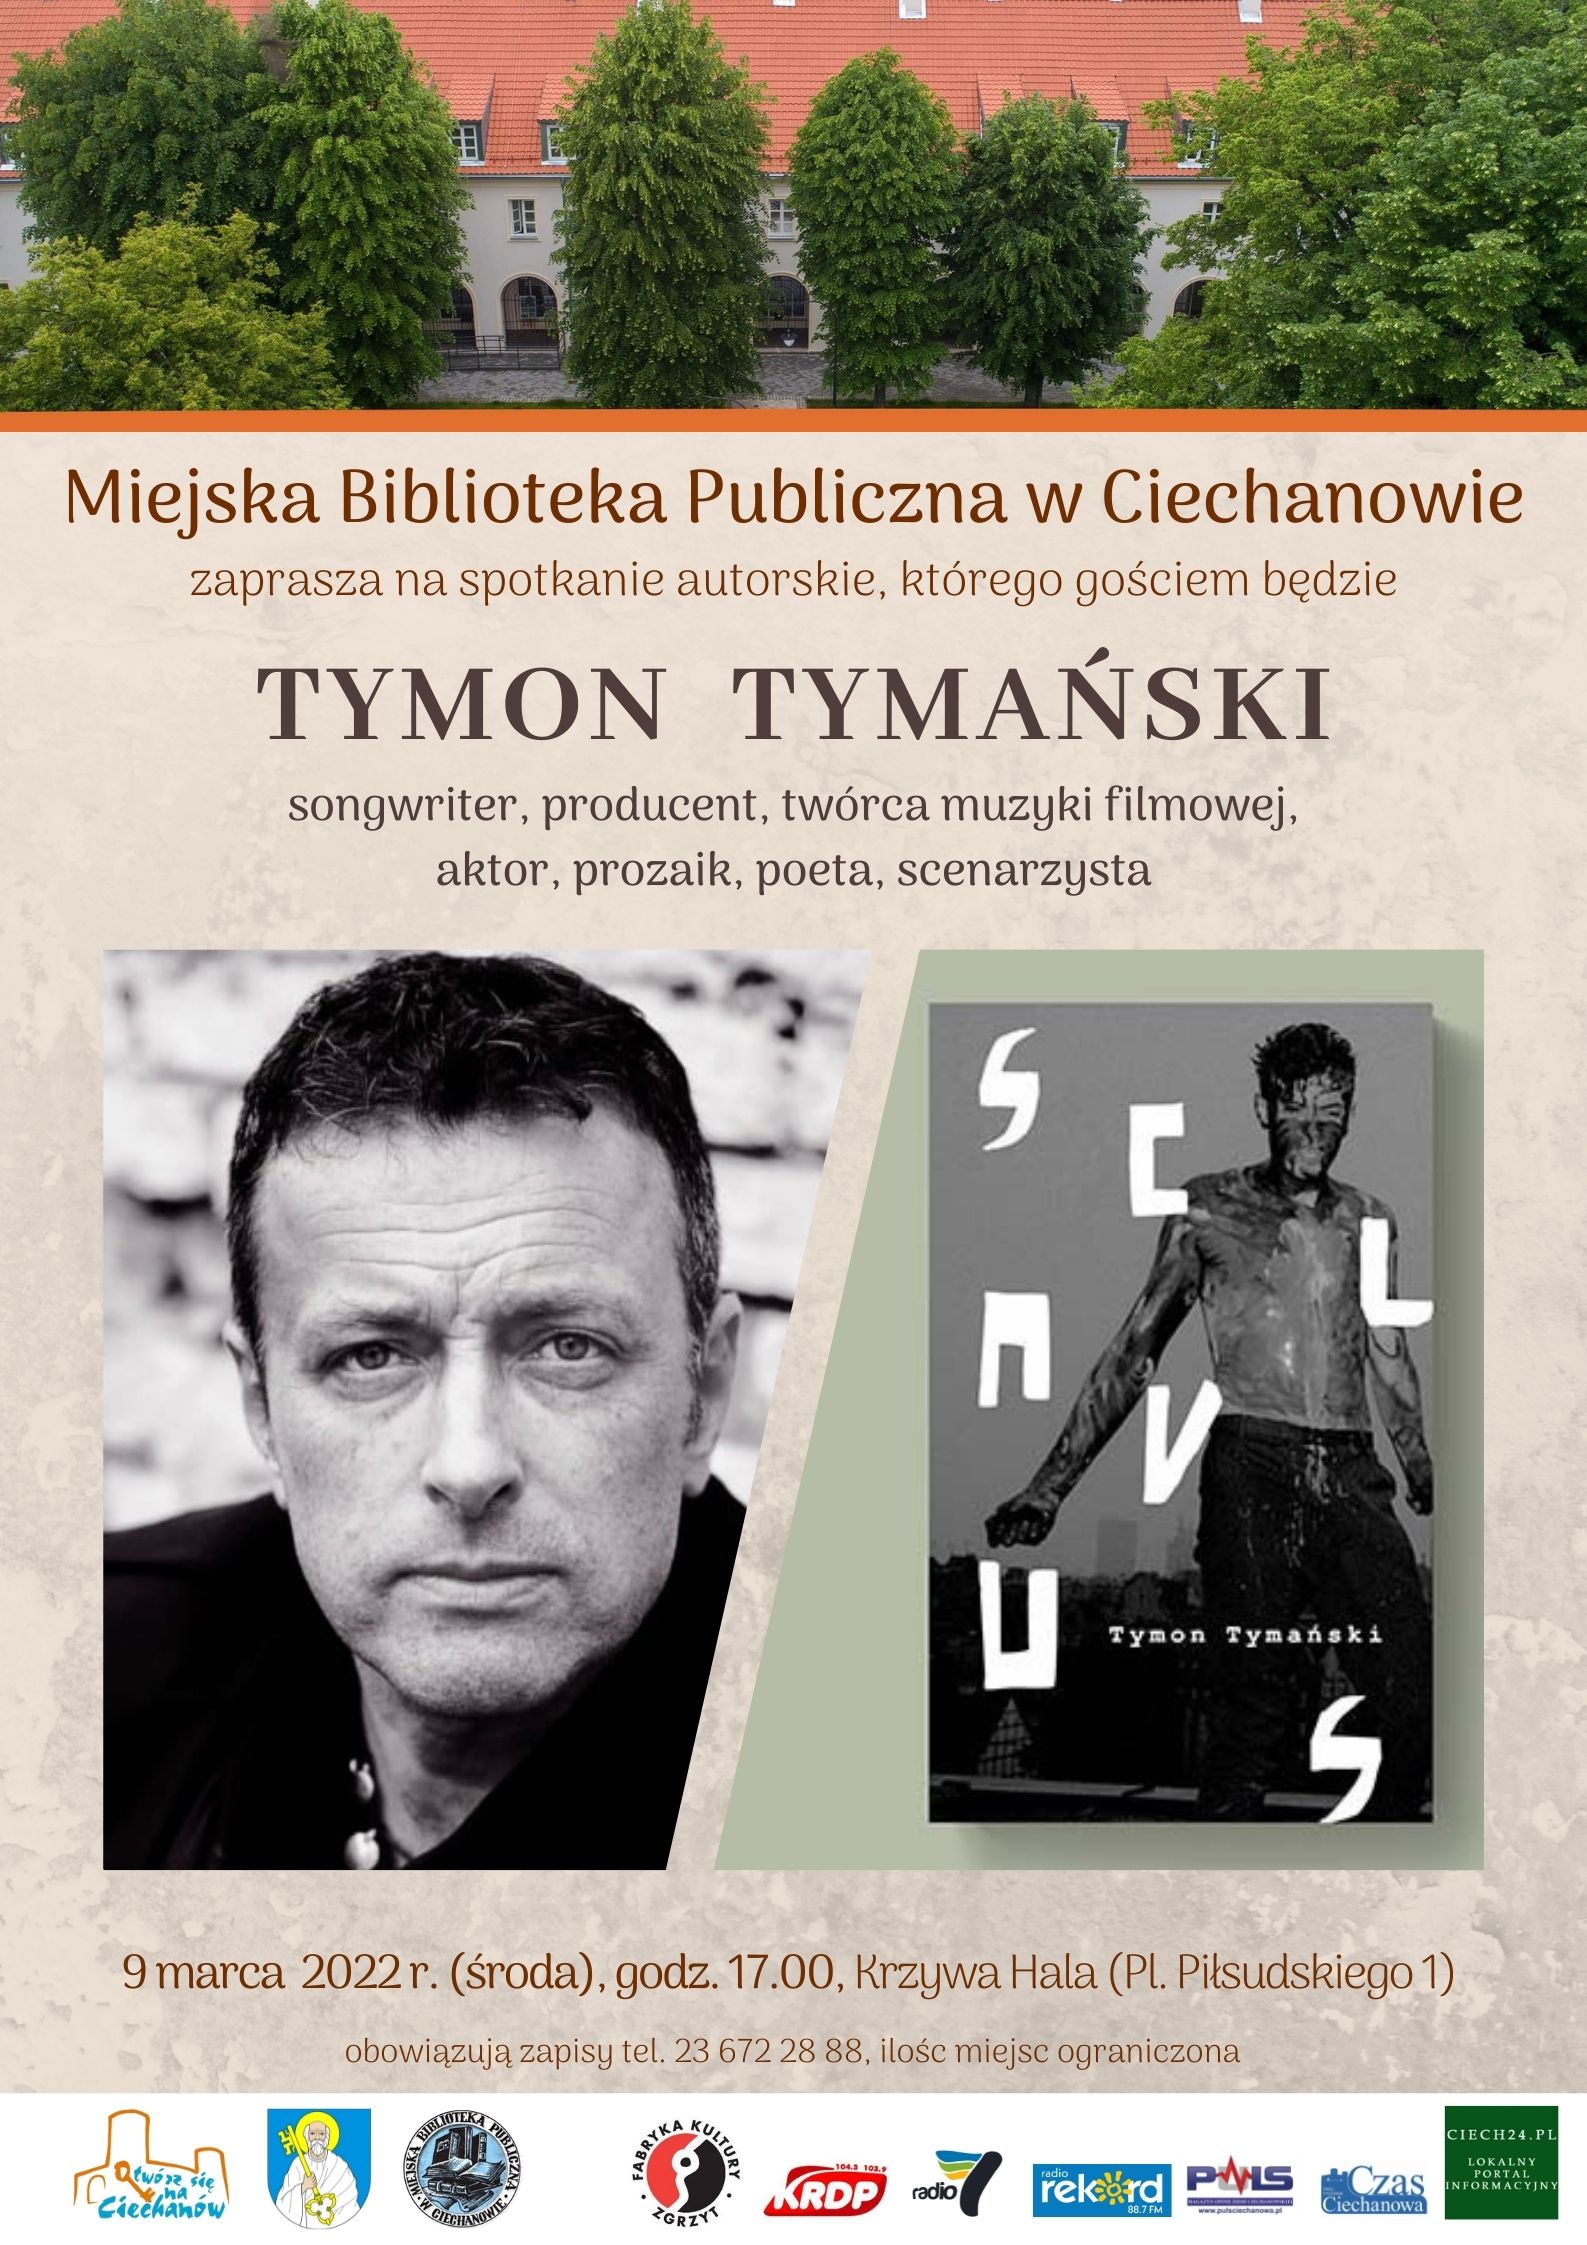 Spotkanie Tymon Tymanski 9.03.2022